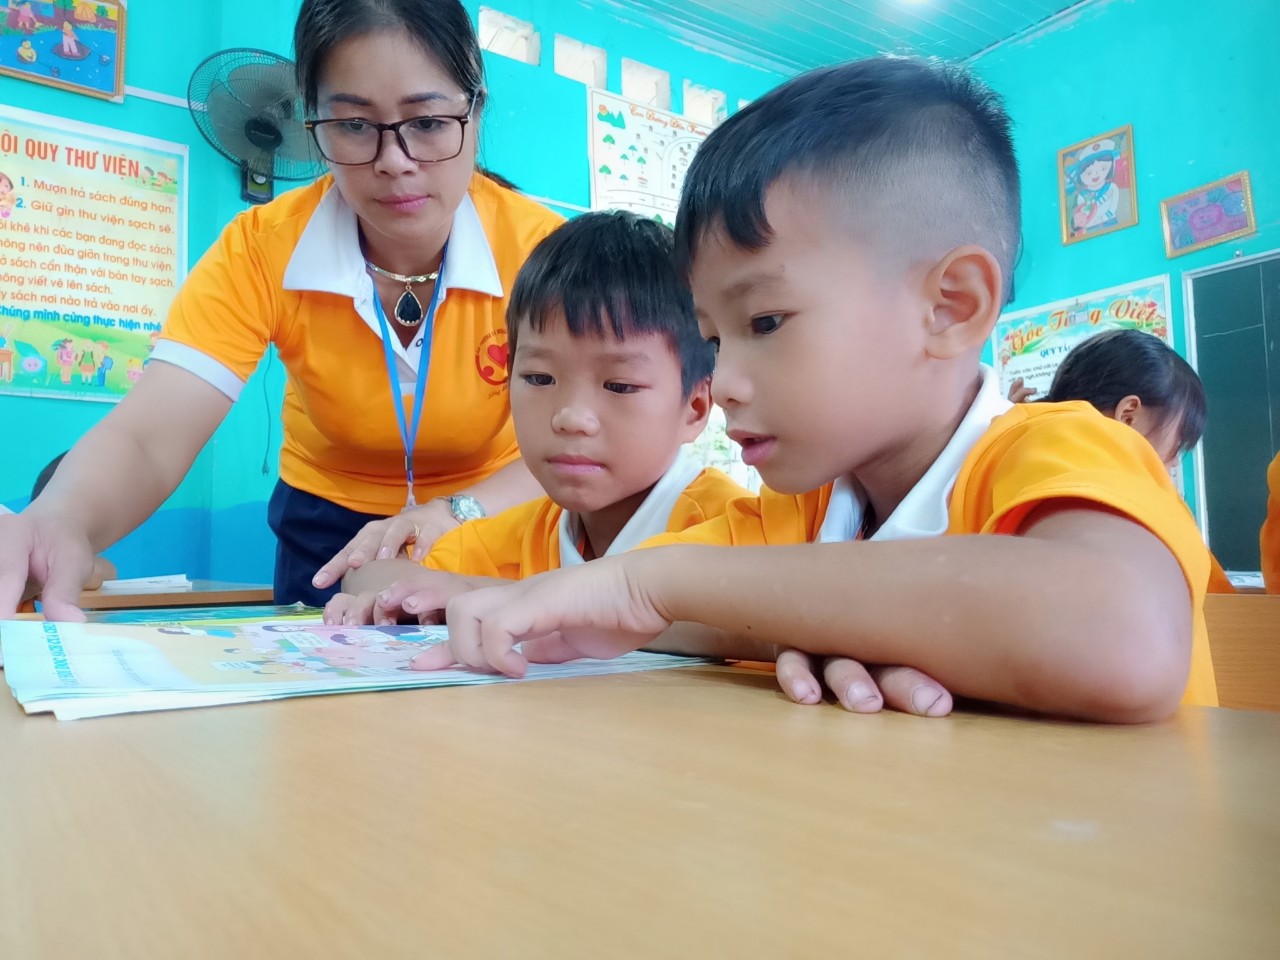 Hành trình níu con chữ, chia sẻ yêu thương của cô giáo Nhượng